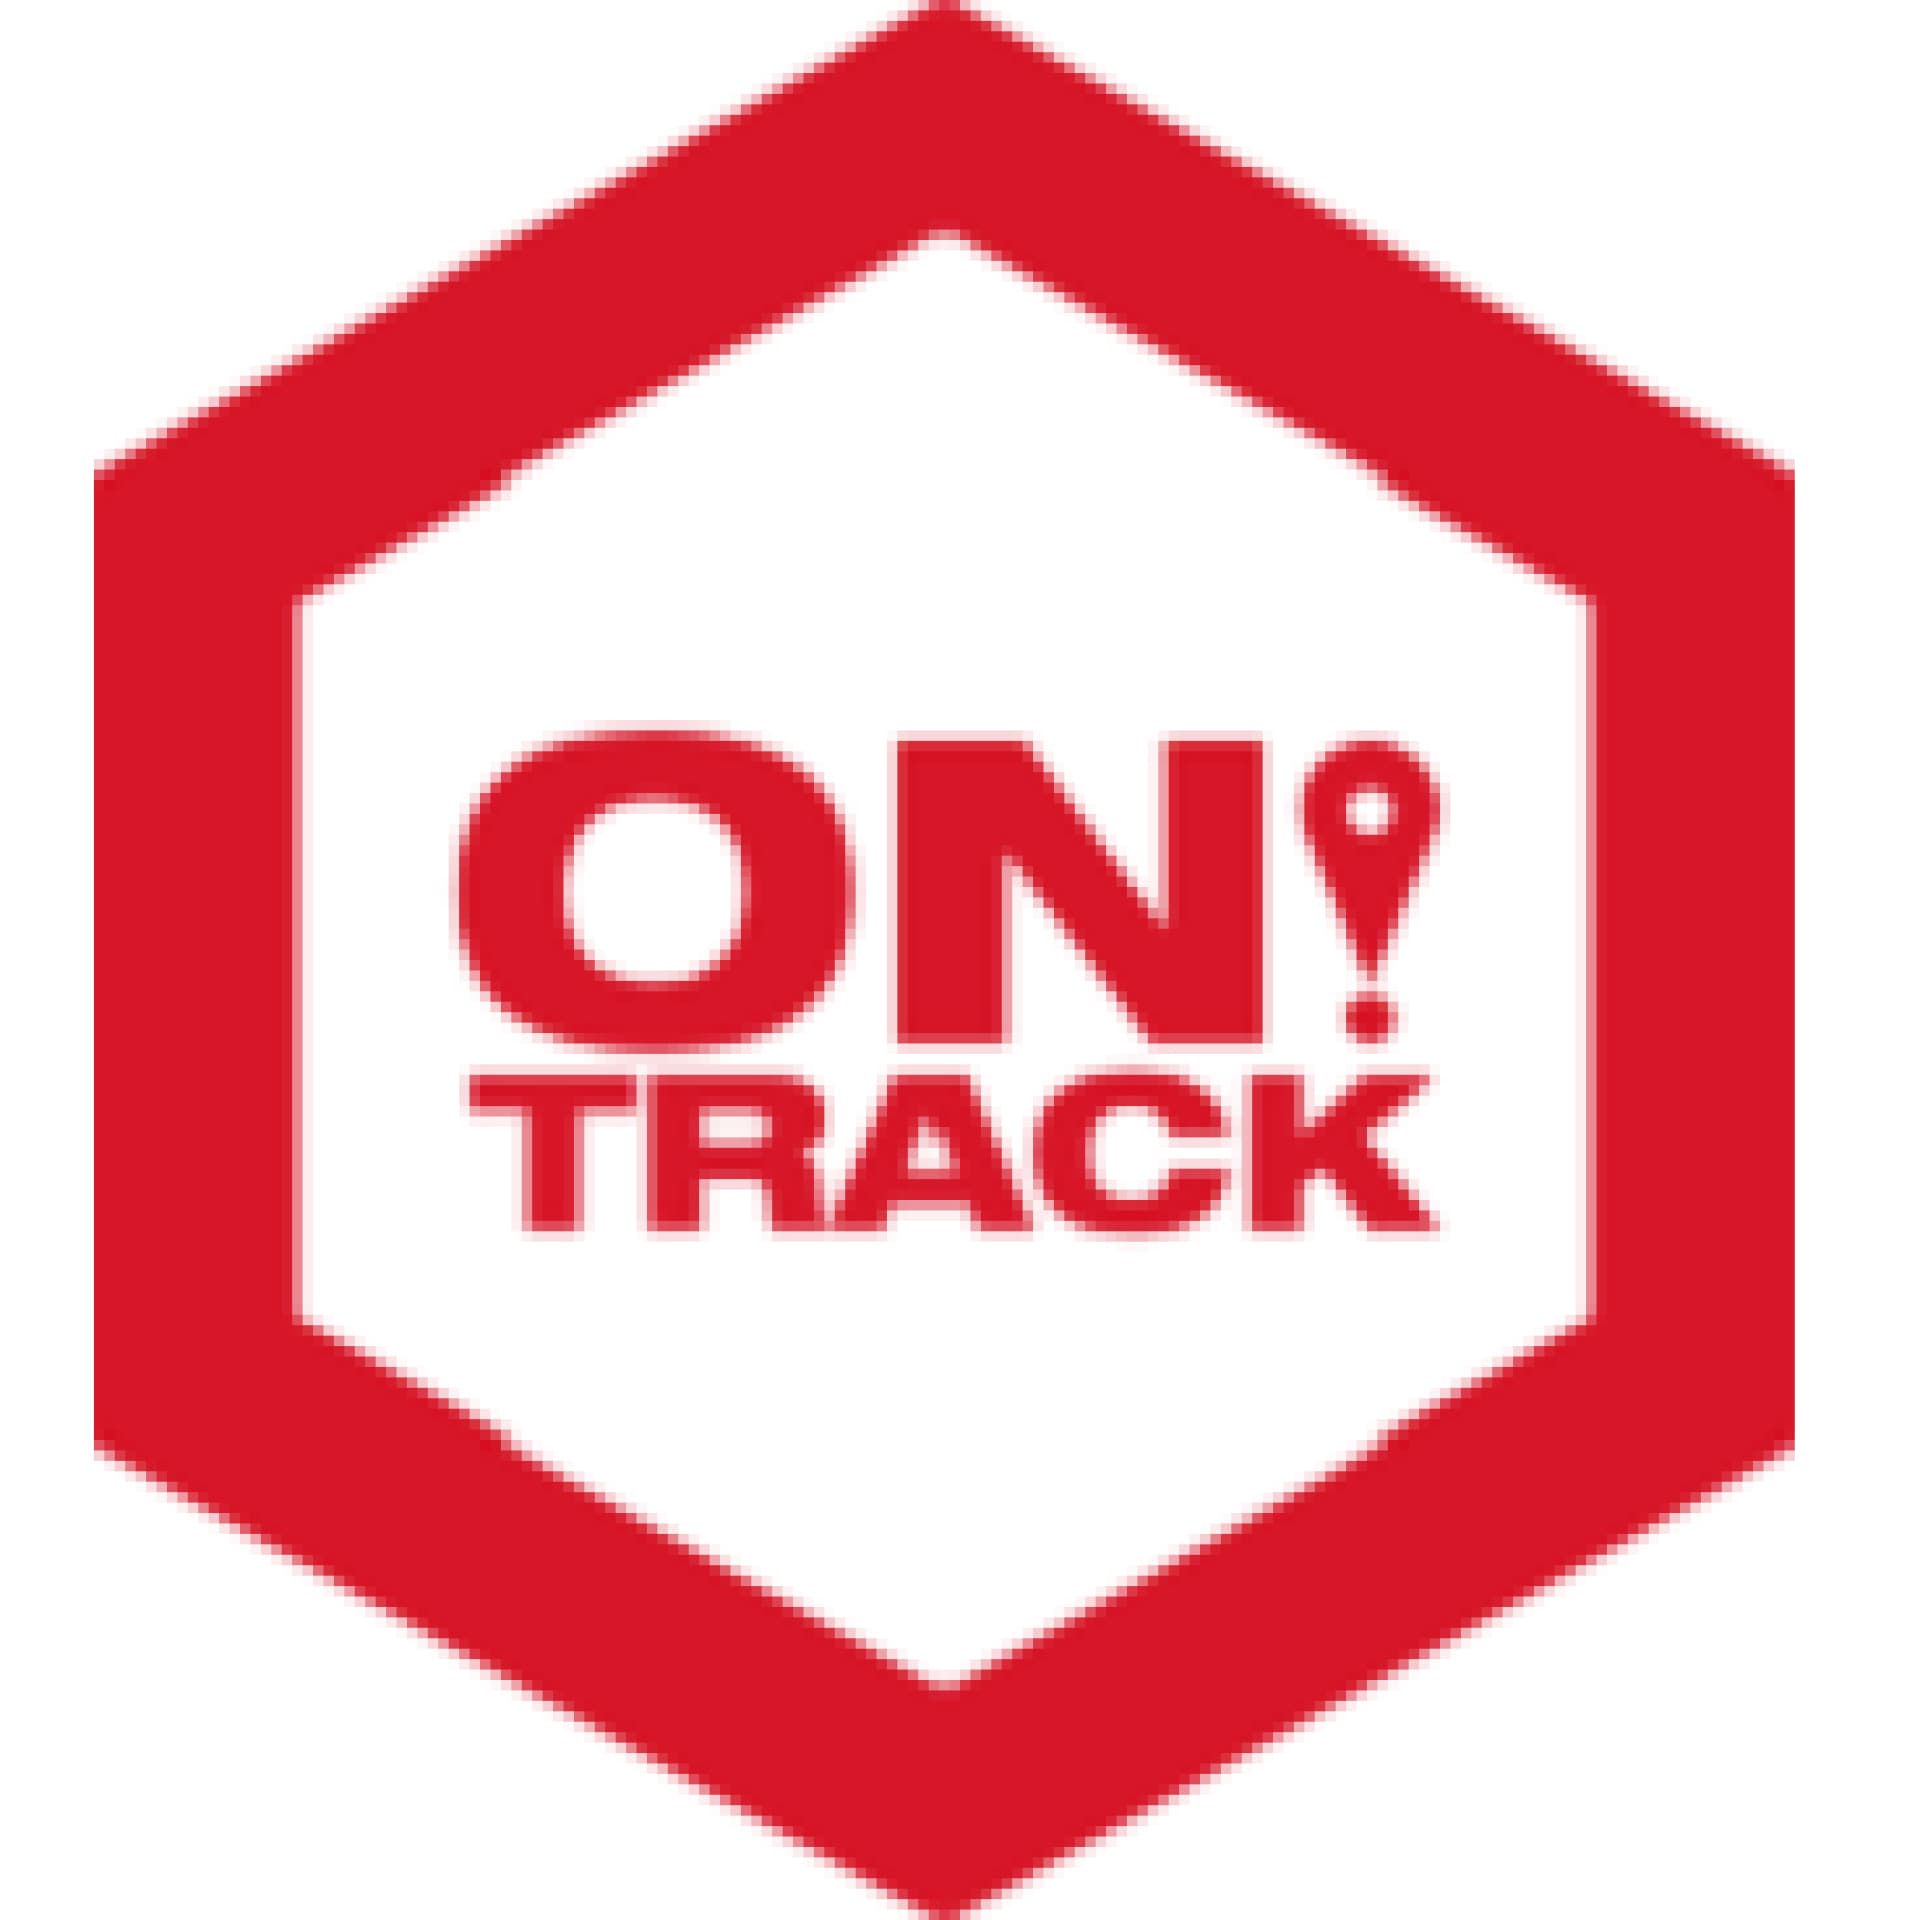 ON!Track